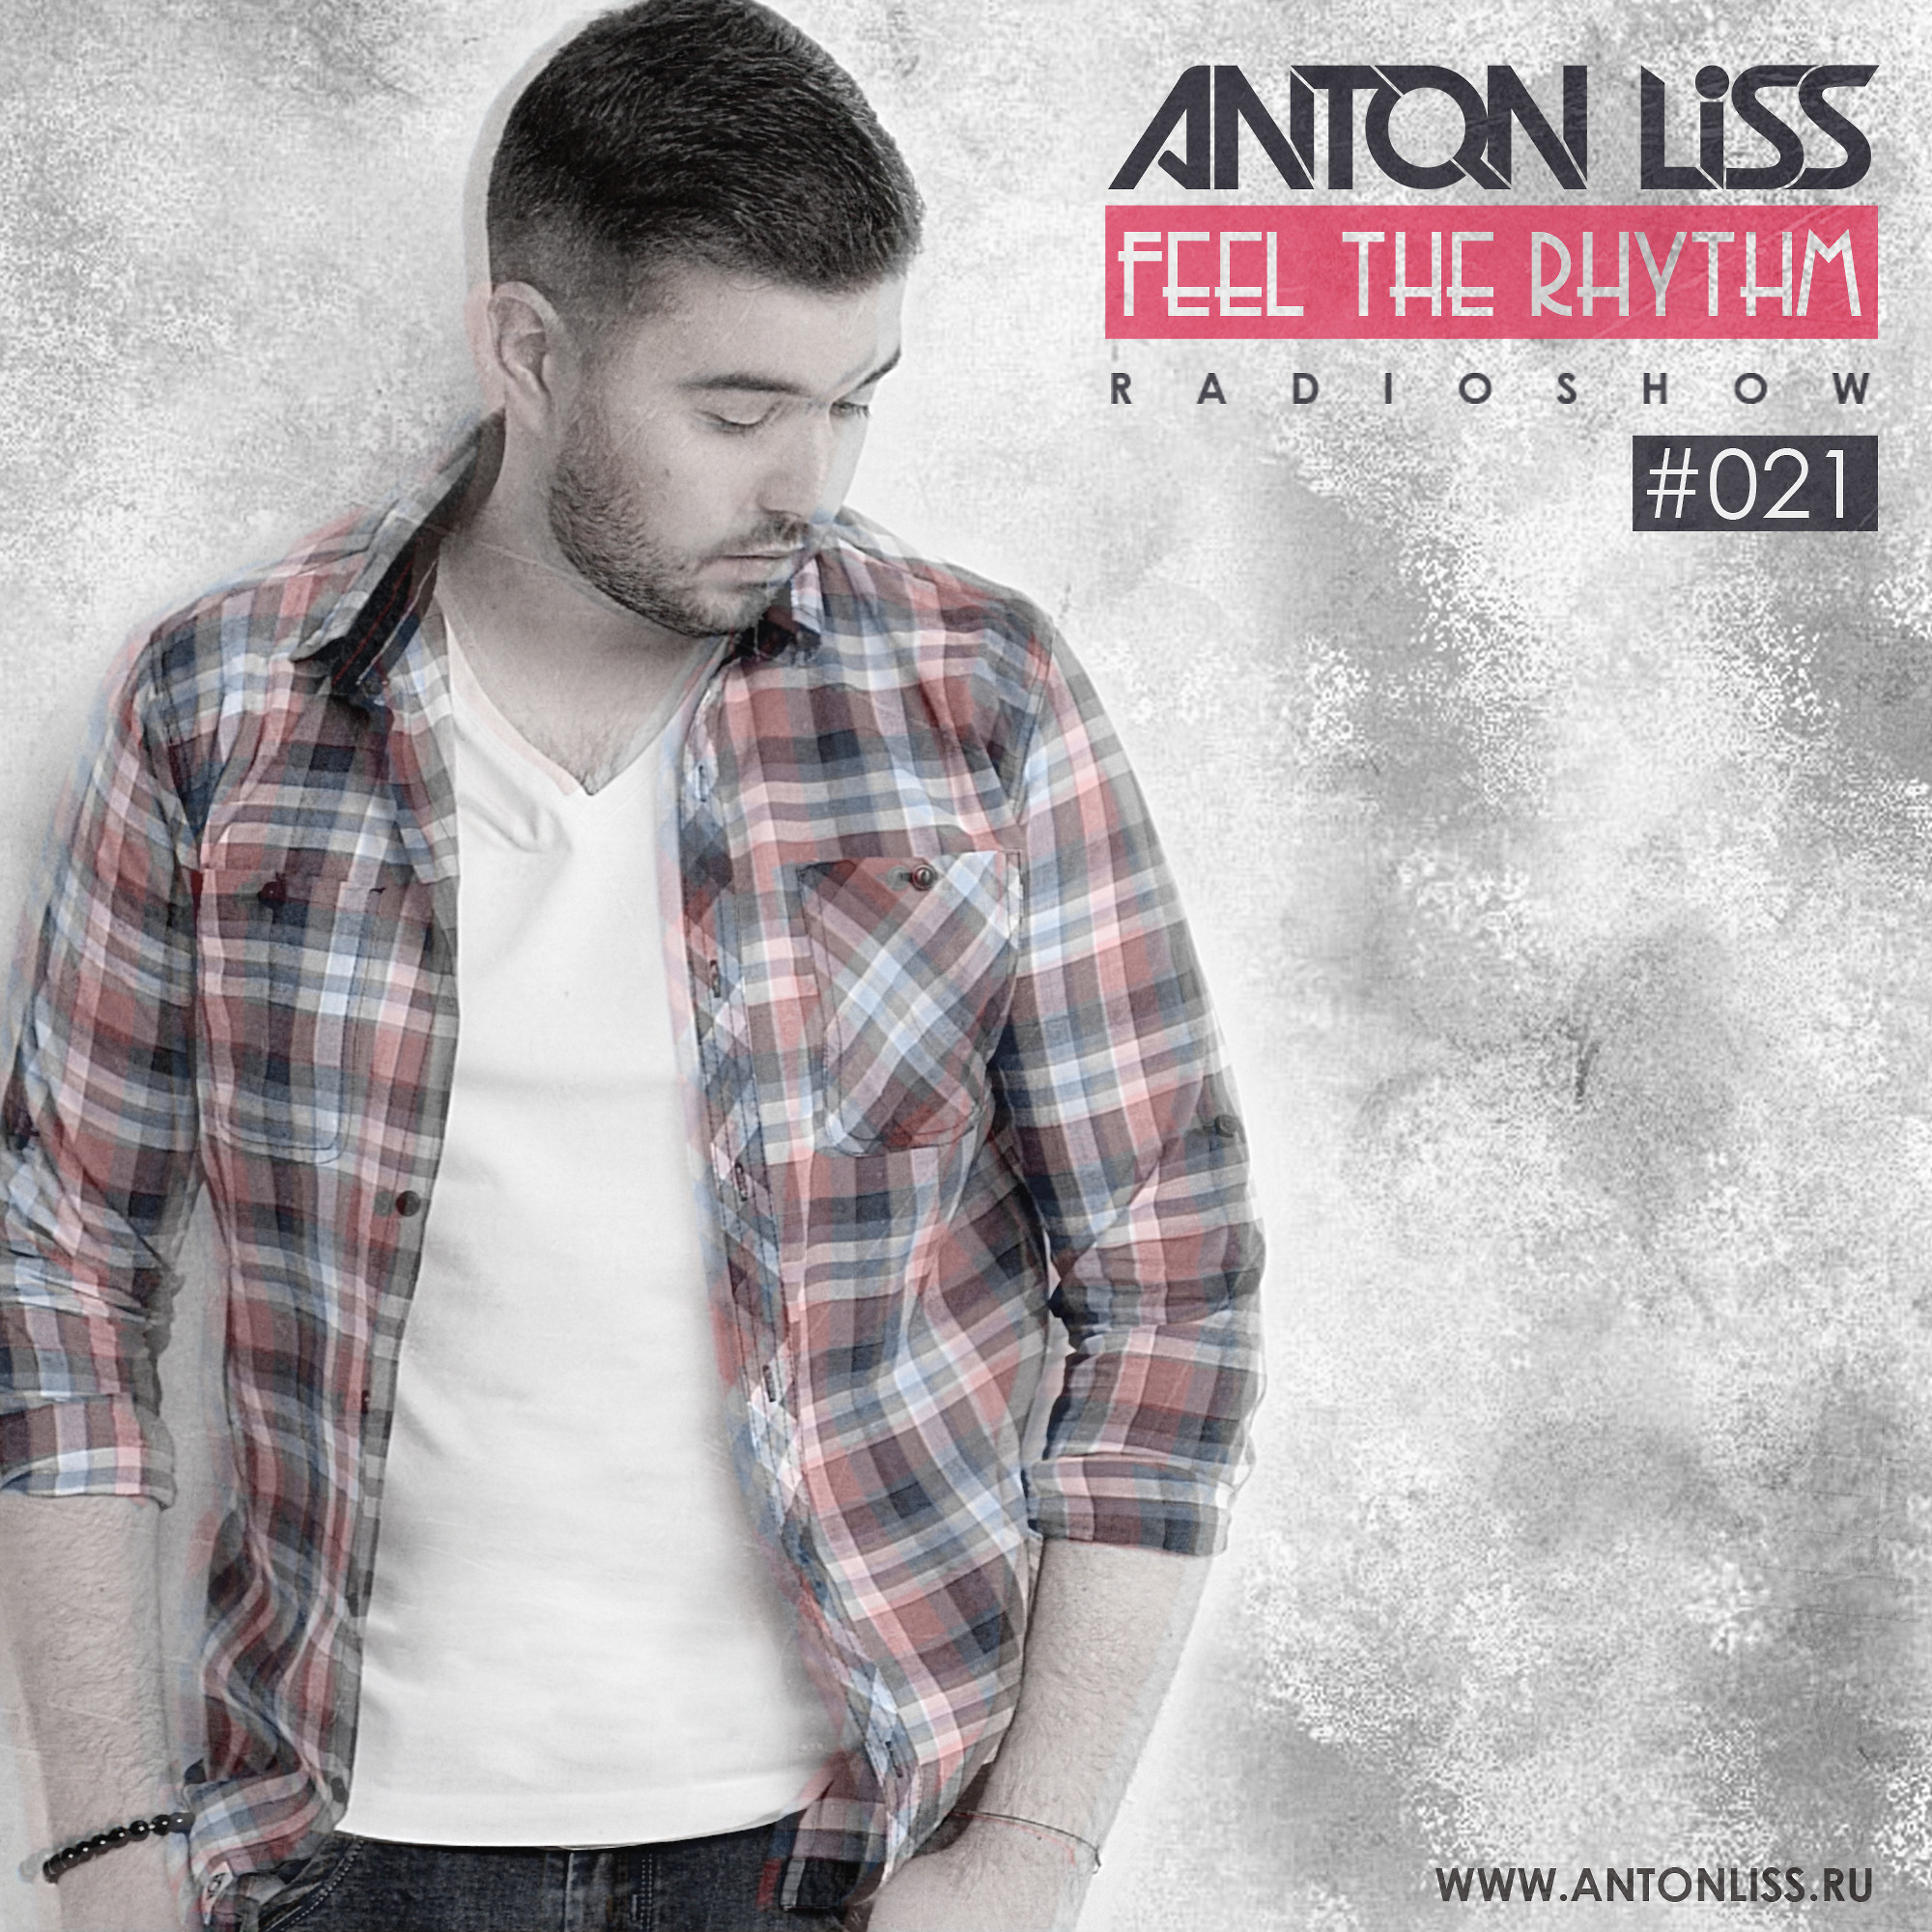 Anton Liss DJ